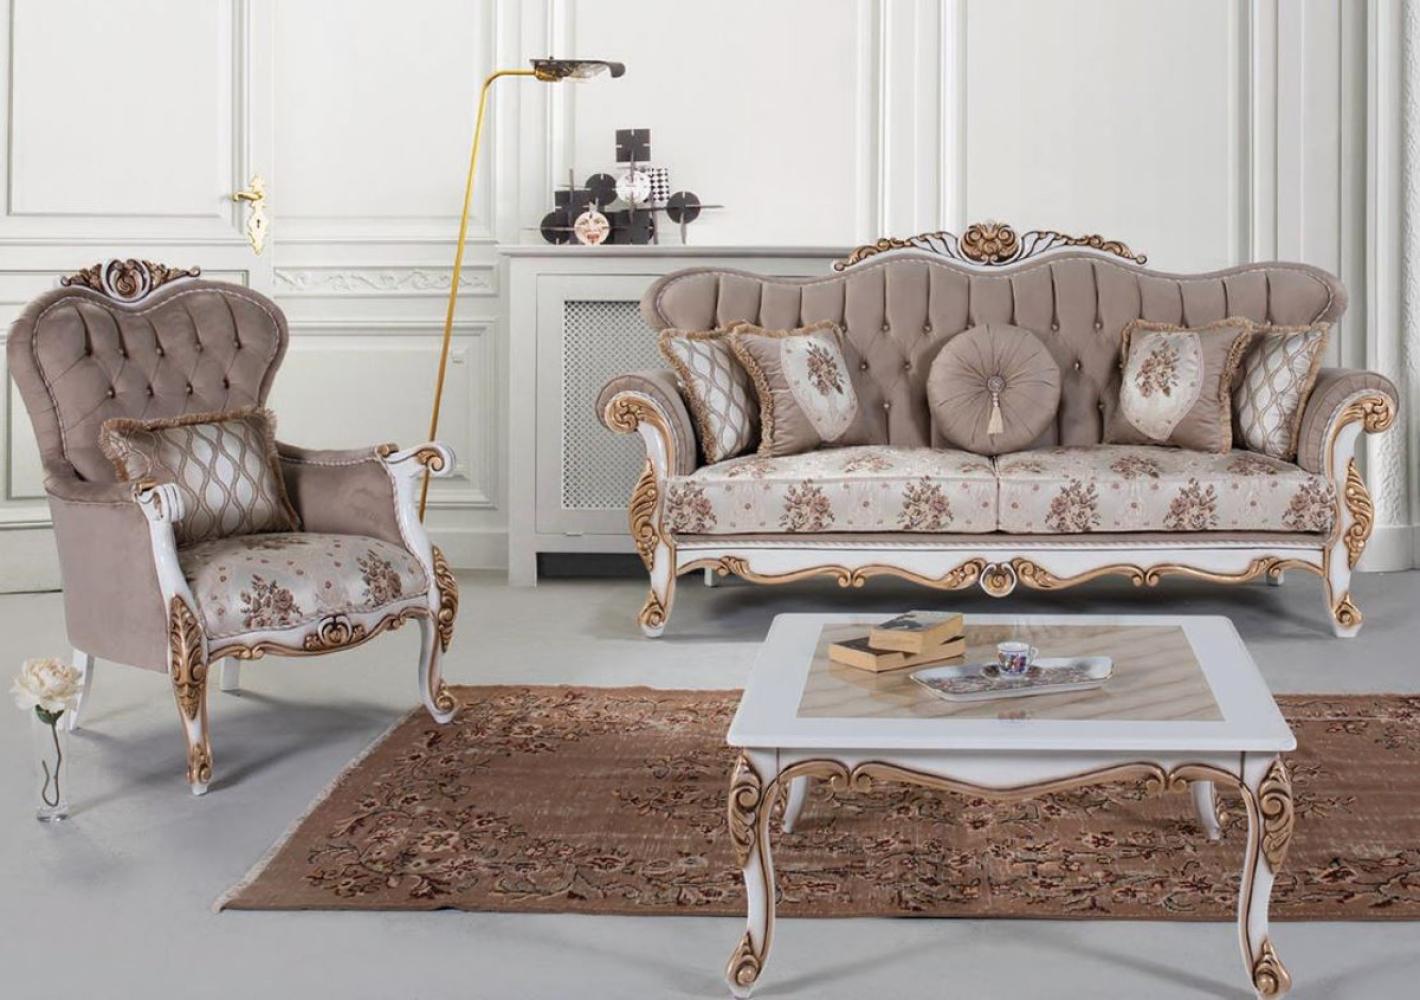 Casa Padrino Luxus Barock Wohnzimmer Set Grau / Mehrfarbig / Weiß / Bronze - 2 Sofas & 2 Sessel & 1 Couchtisch - Wohnzimmer Möbel im Barockstil - Edel & Prunkvoll Bild 1